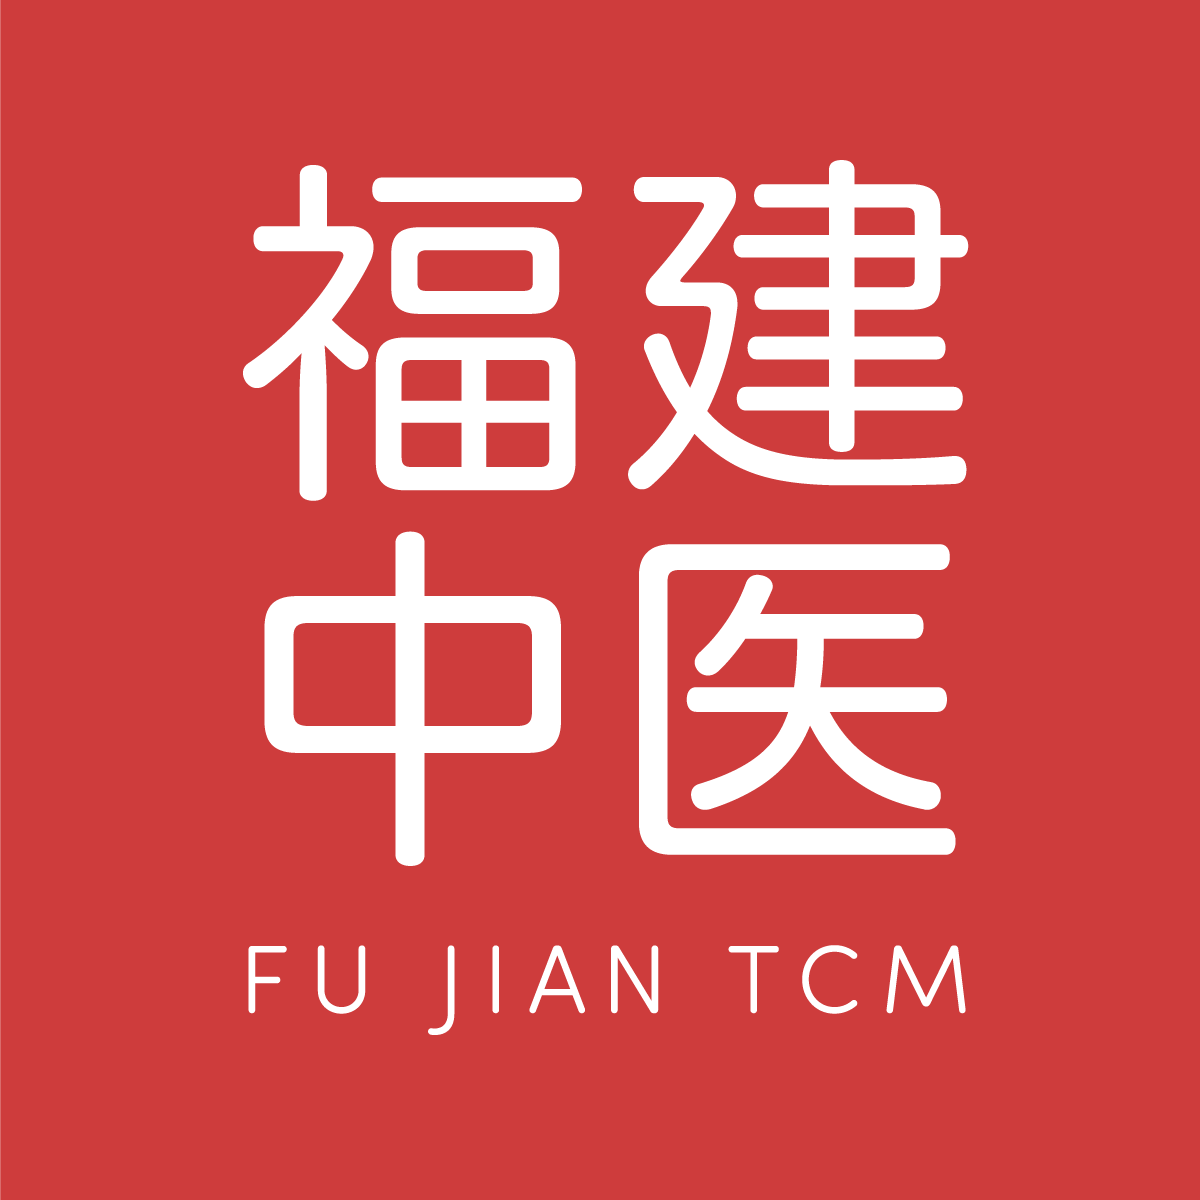 Fu Jian Tcm Medical Centre Pte. Ltd. logo